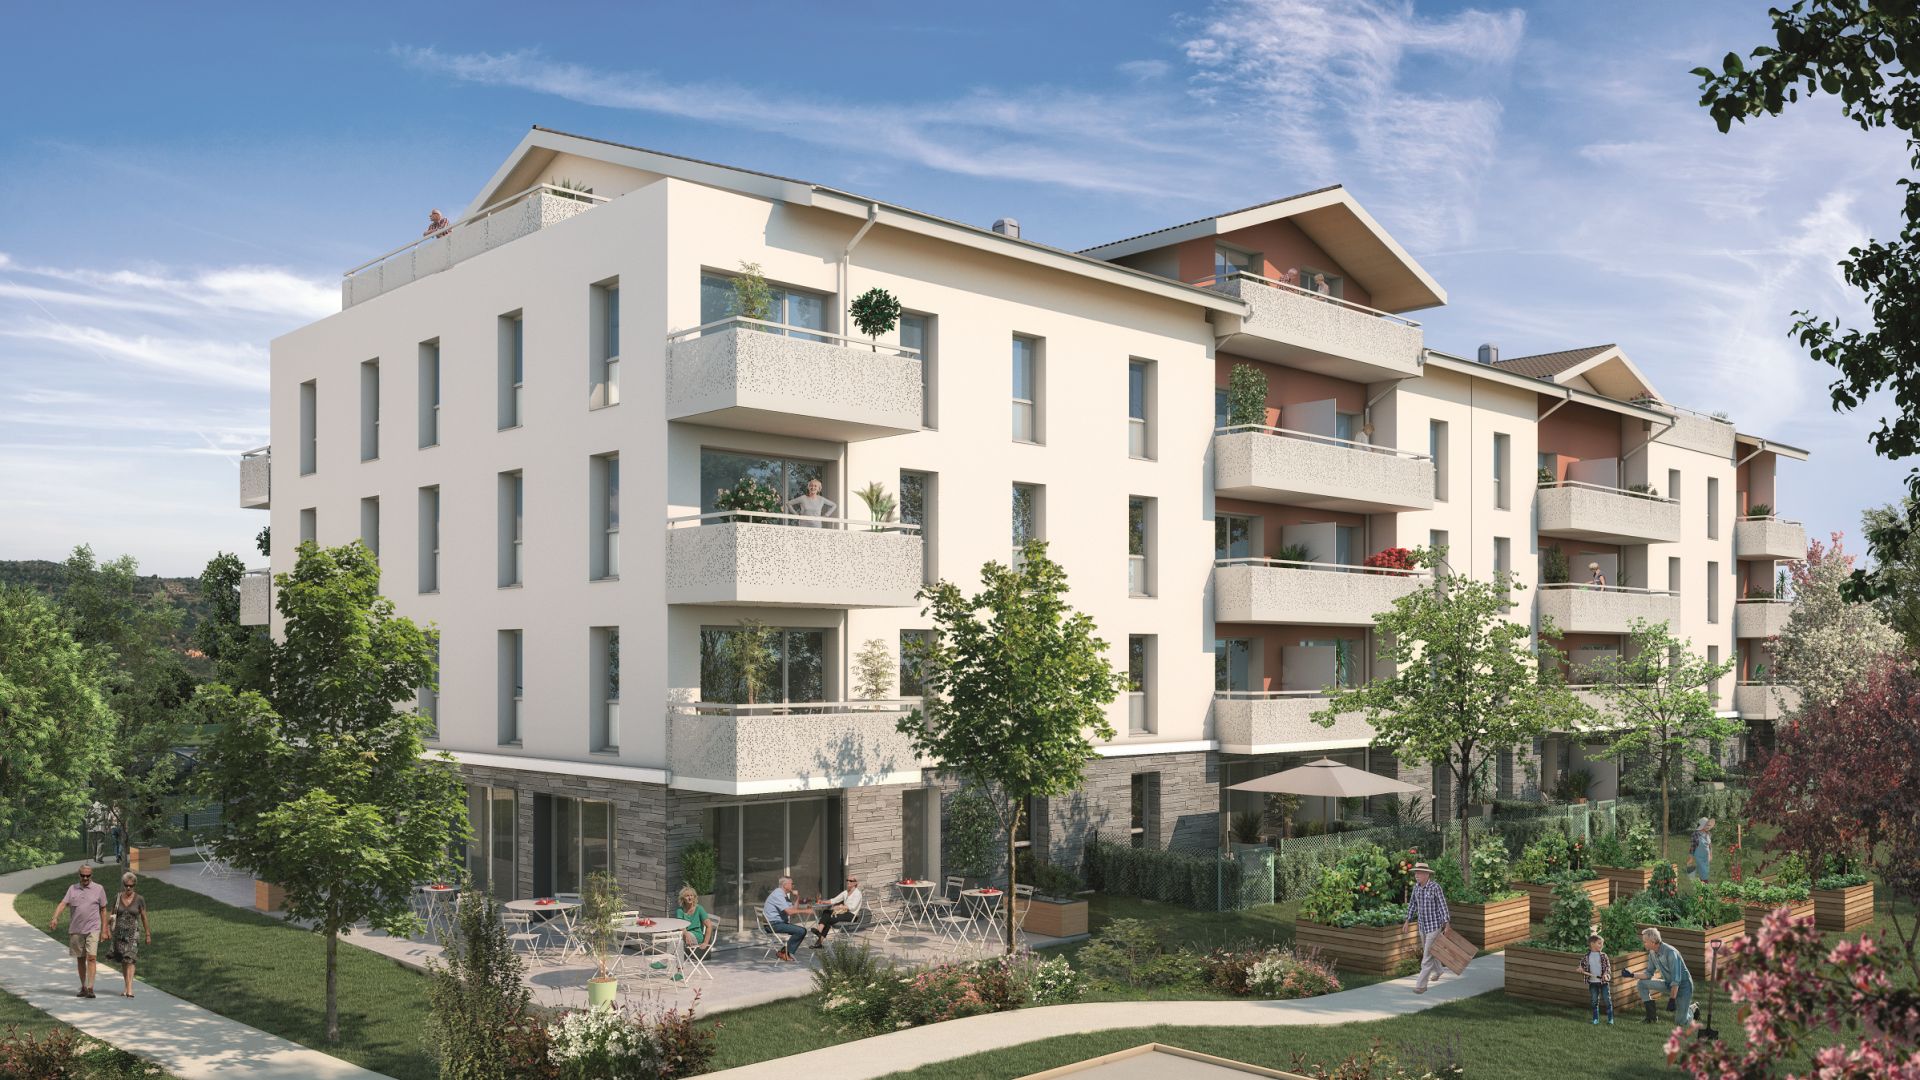 Greencity immobilier - achat appartements neufs du T2 au T3 - Résidence séniors - Les Villages d'Or Cessy - 01170 Cessy - vue club house